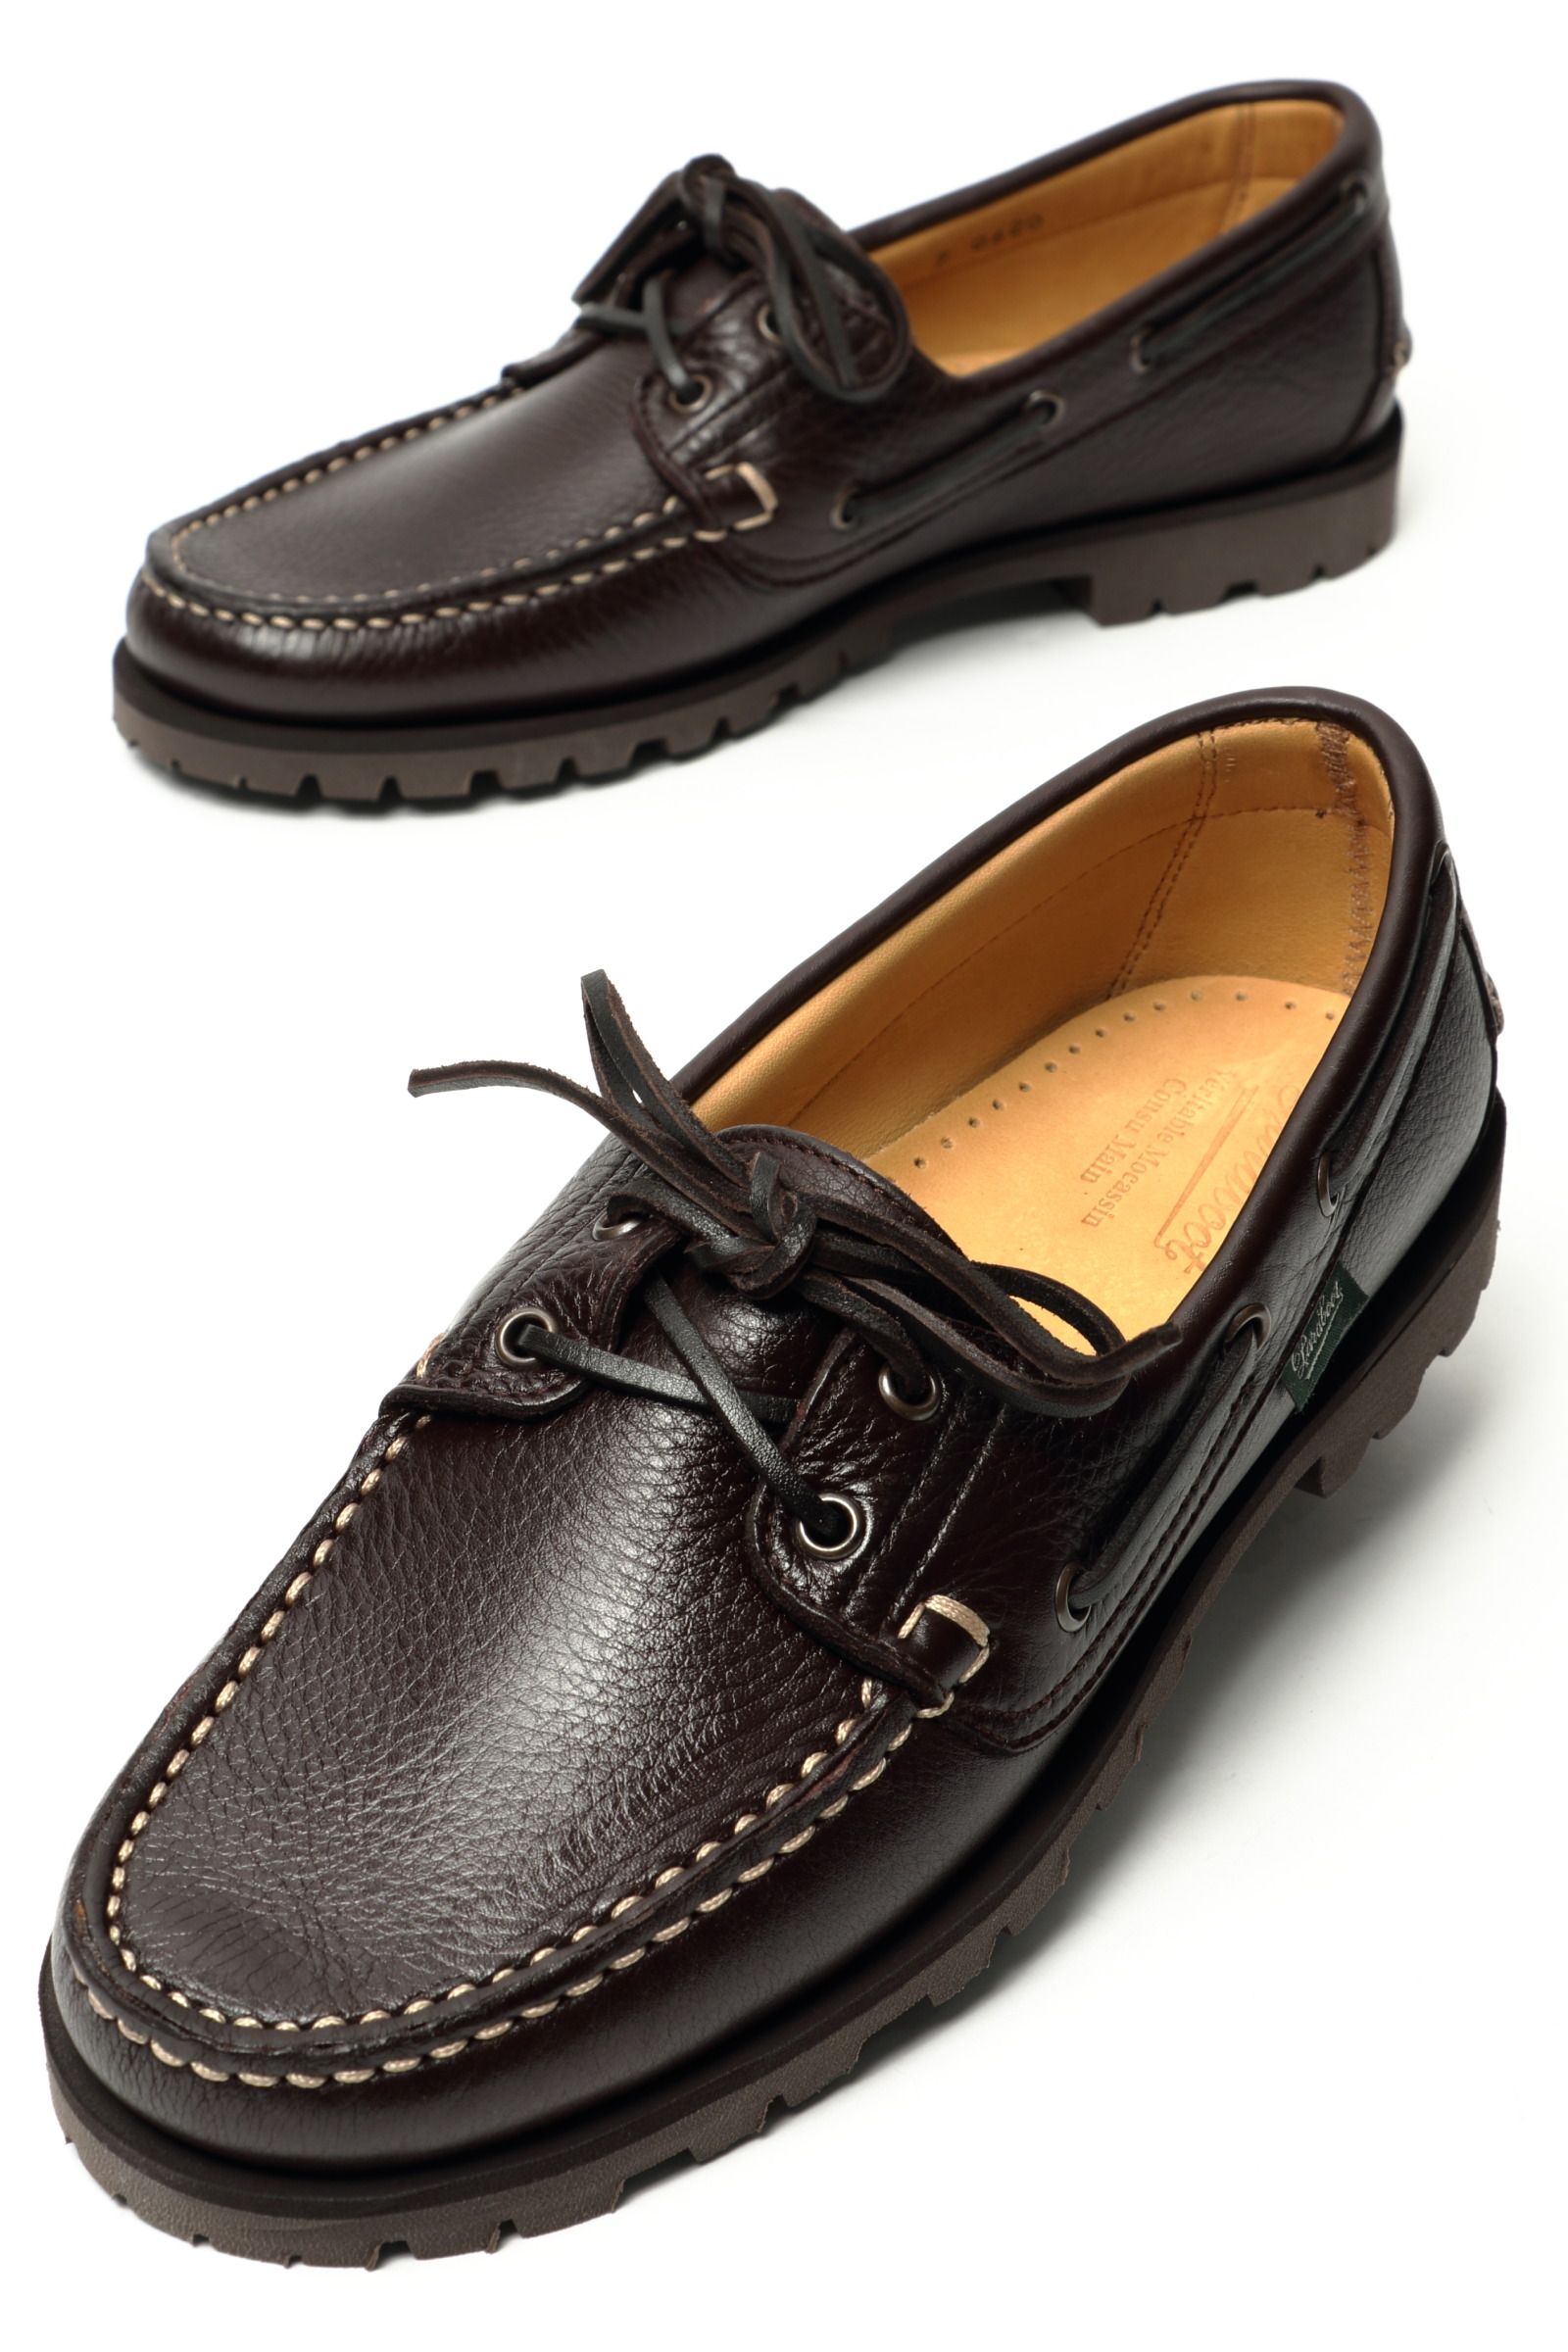 MALO - マロ シュリンクレザー キャンプモックシューズ 革靴 / ブラック NOIR - UK6/24.5~25.0